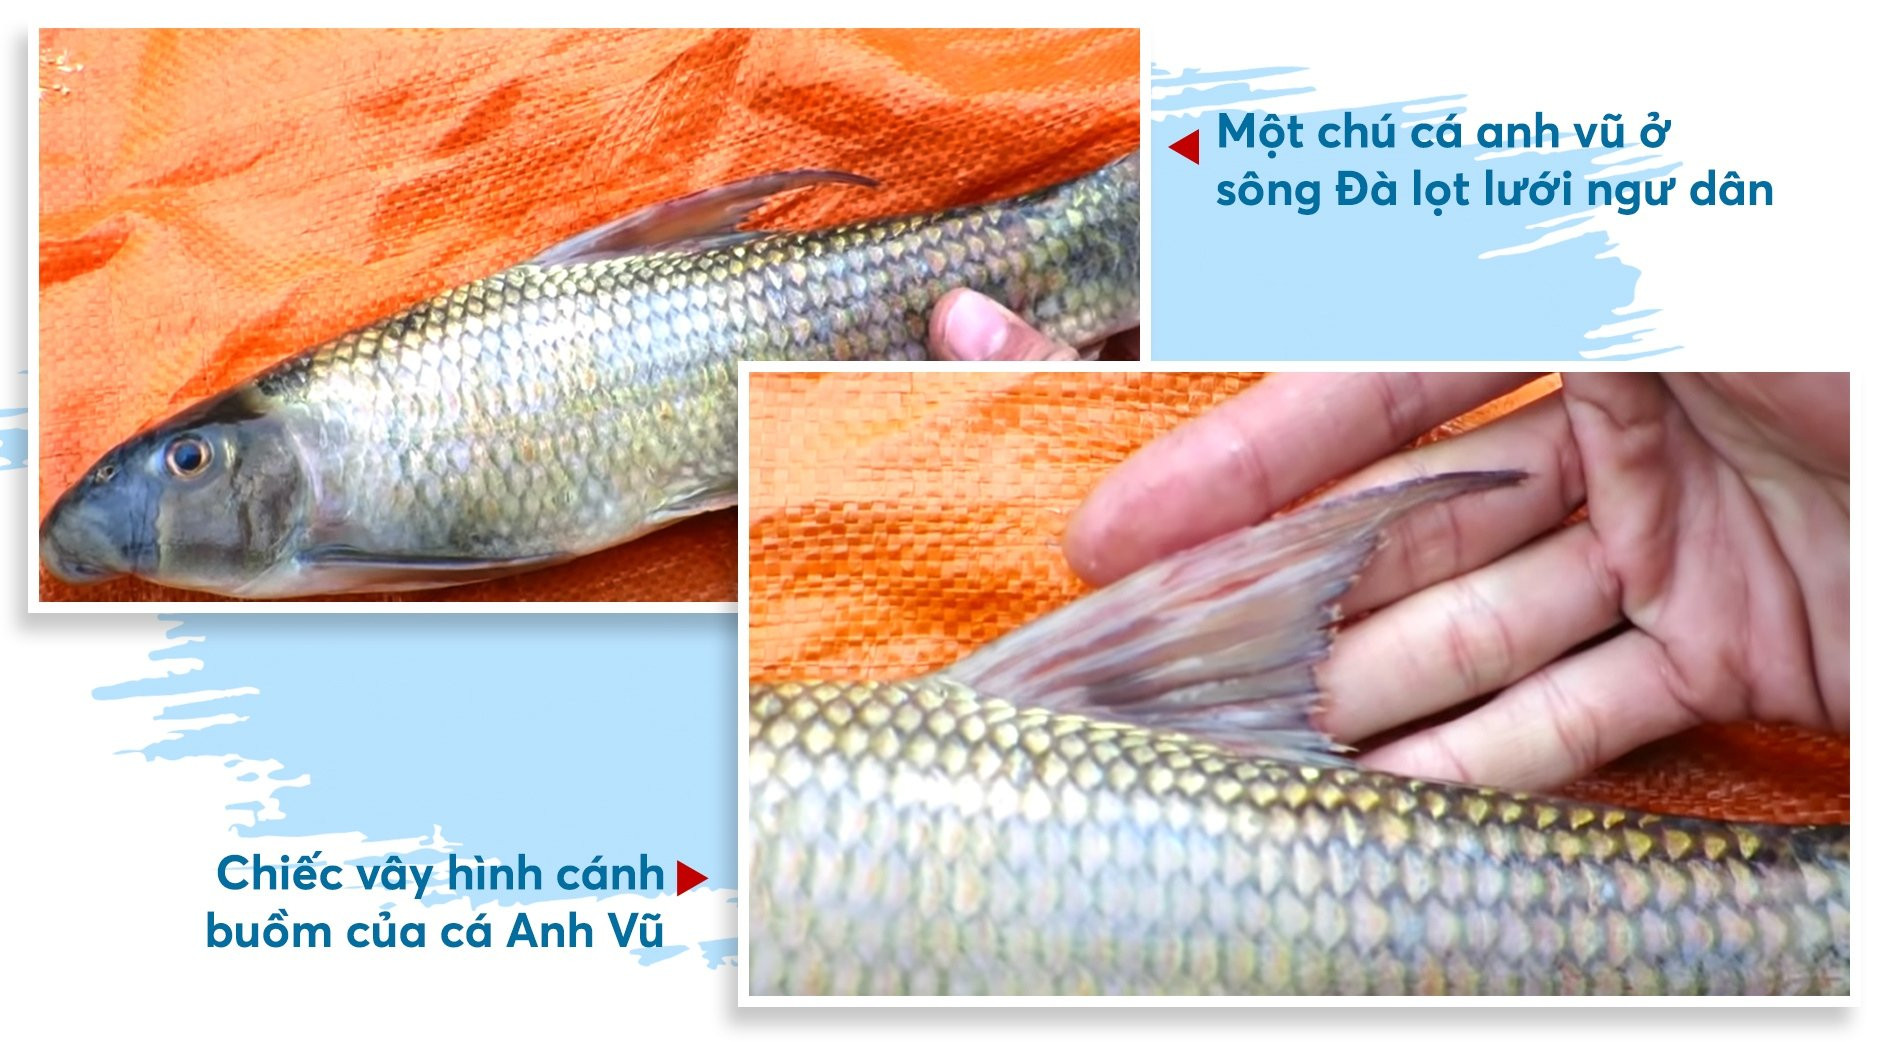 Chuyện ít biết về loài cá cả chục triệu đồng/kg - Ảnh 3.